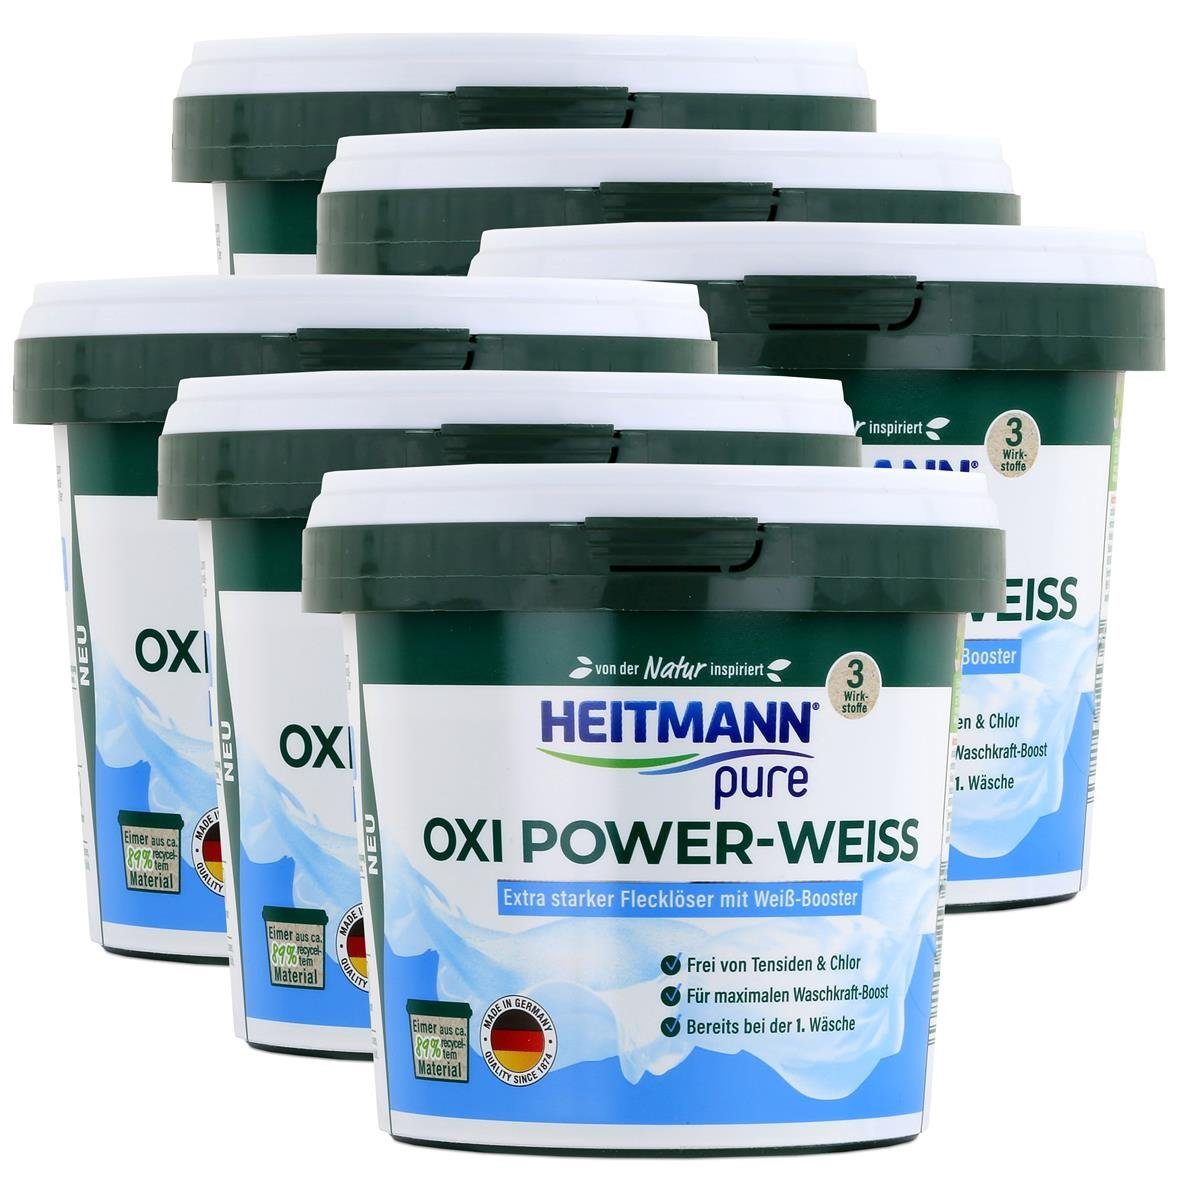 HEITMANN Heitmann pure Oxi Power-Weiss 500g - Flecklöser mit Weiß-Booster (6er Vollwaschmittel